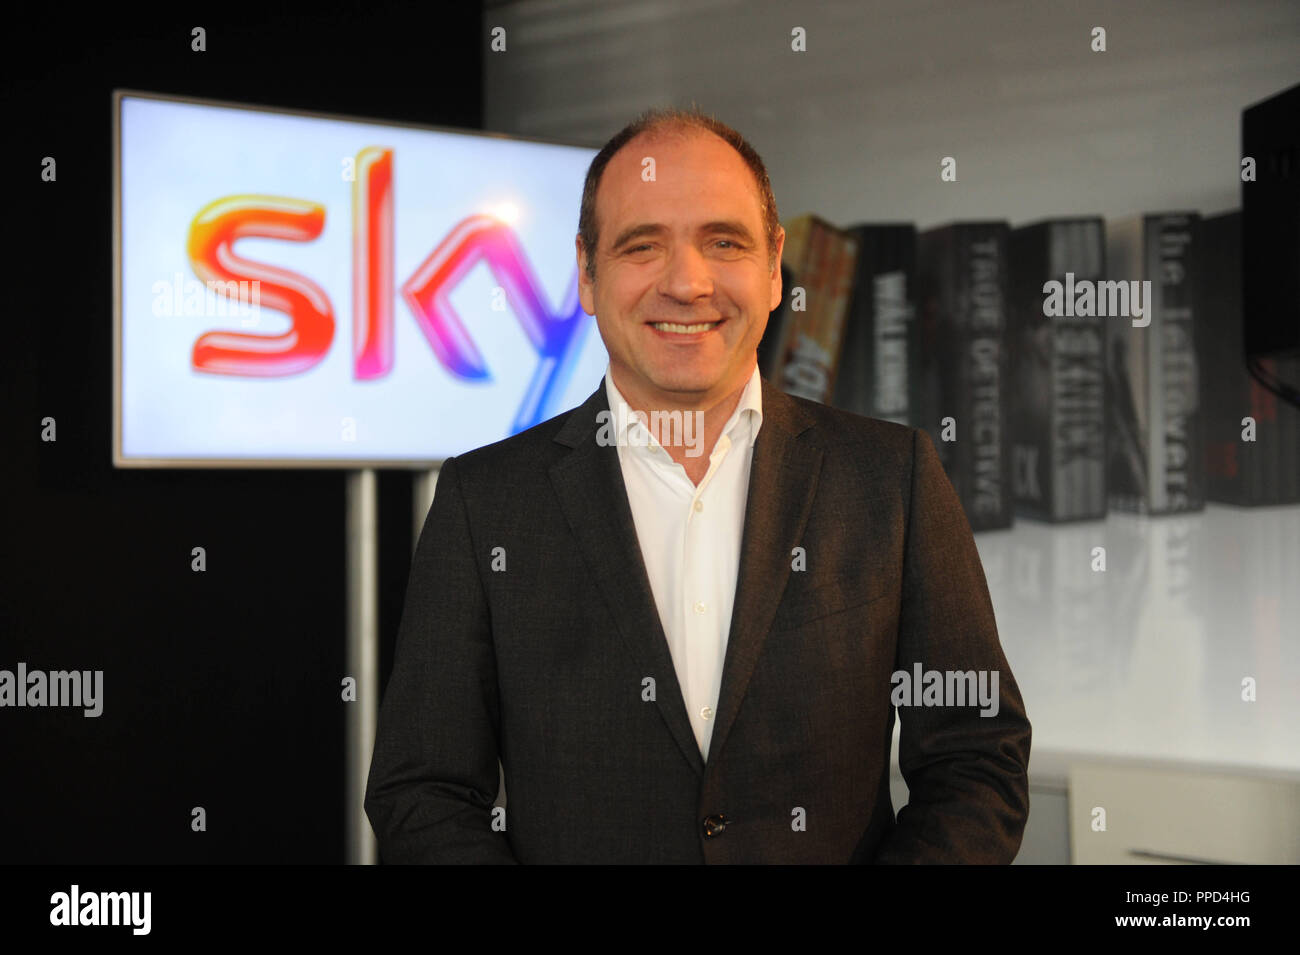 Carsten Schmidt, Vorsitzender der Geschäftsführung der Sky Deutschland, präsentiert, Elyas M'Barek als das neue Gesicht des Pay-TV-Kanal. Stockfoto